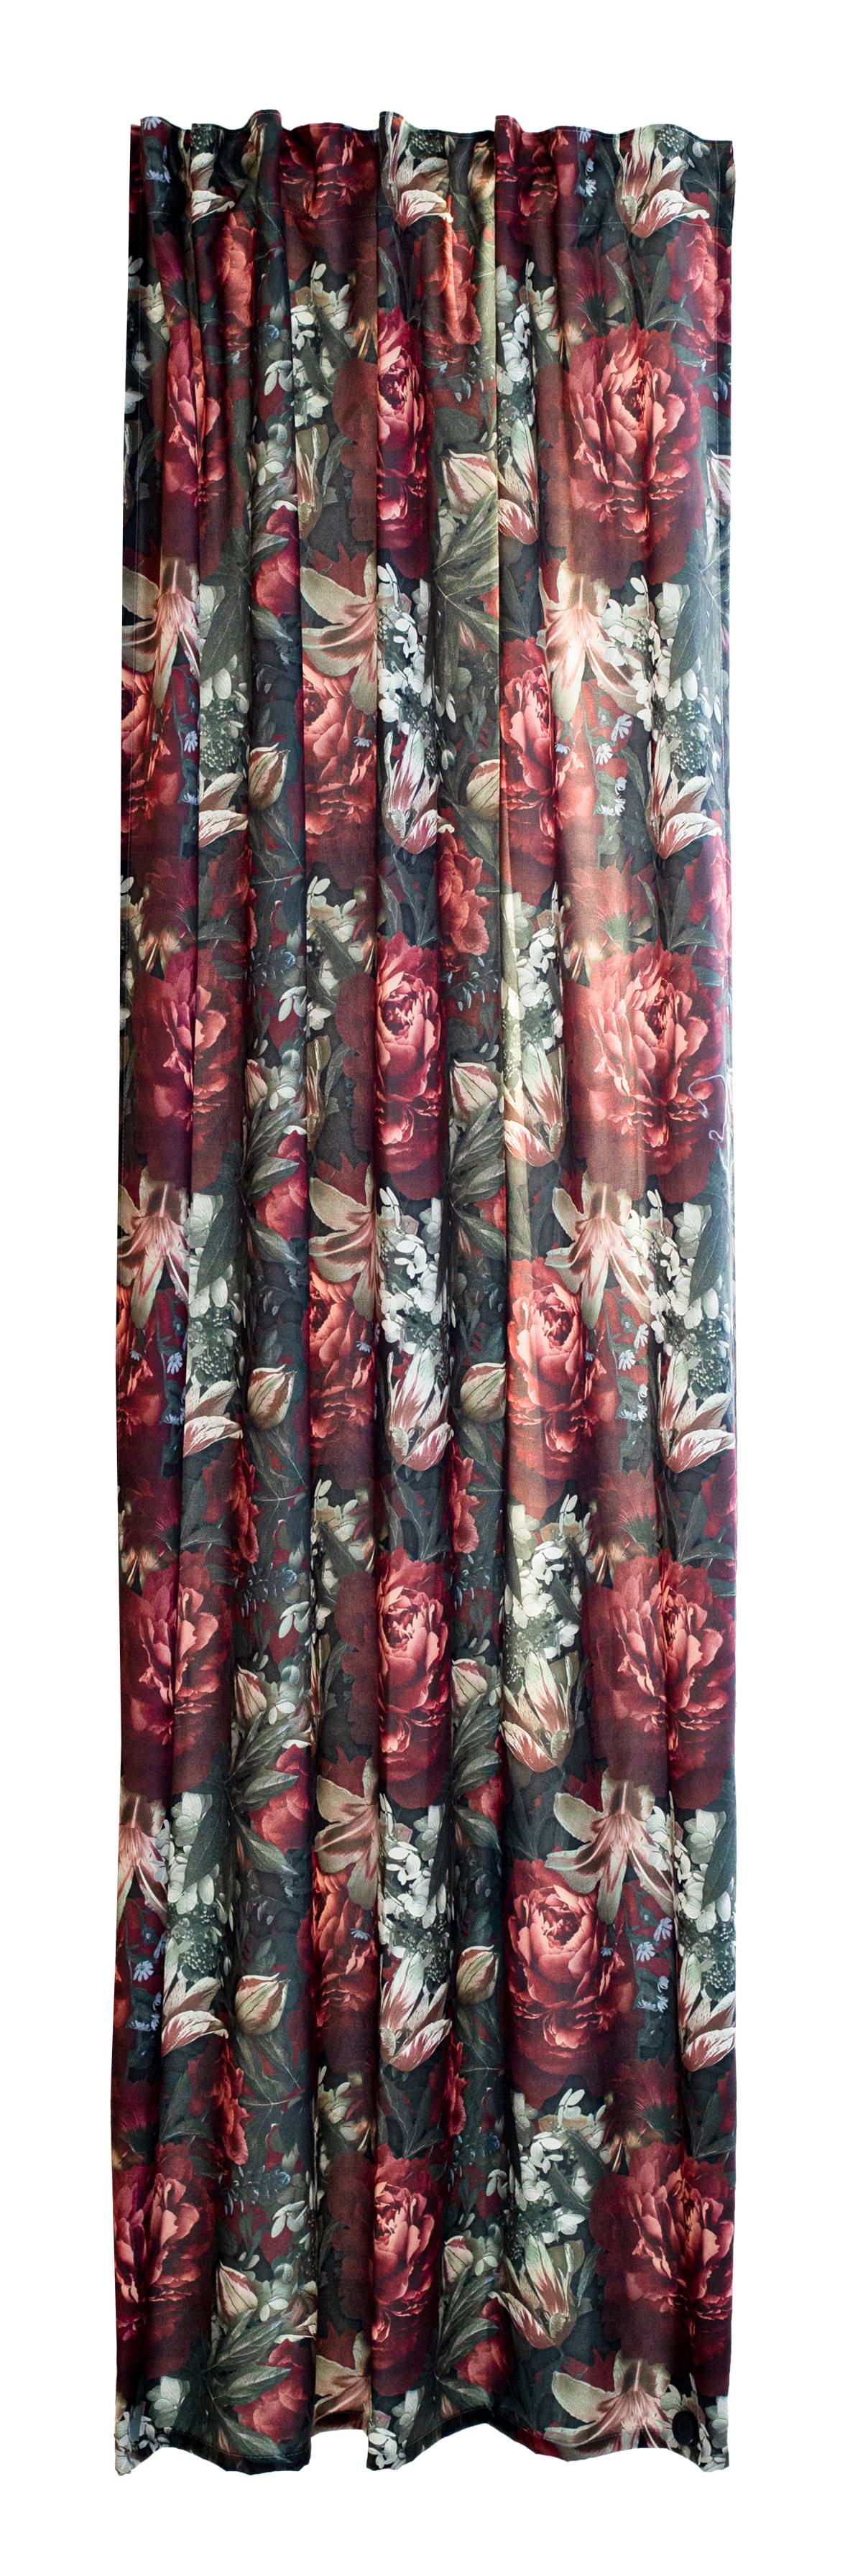 Vorhang rot floral blickdicht modern kaufen home24 